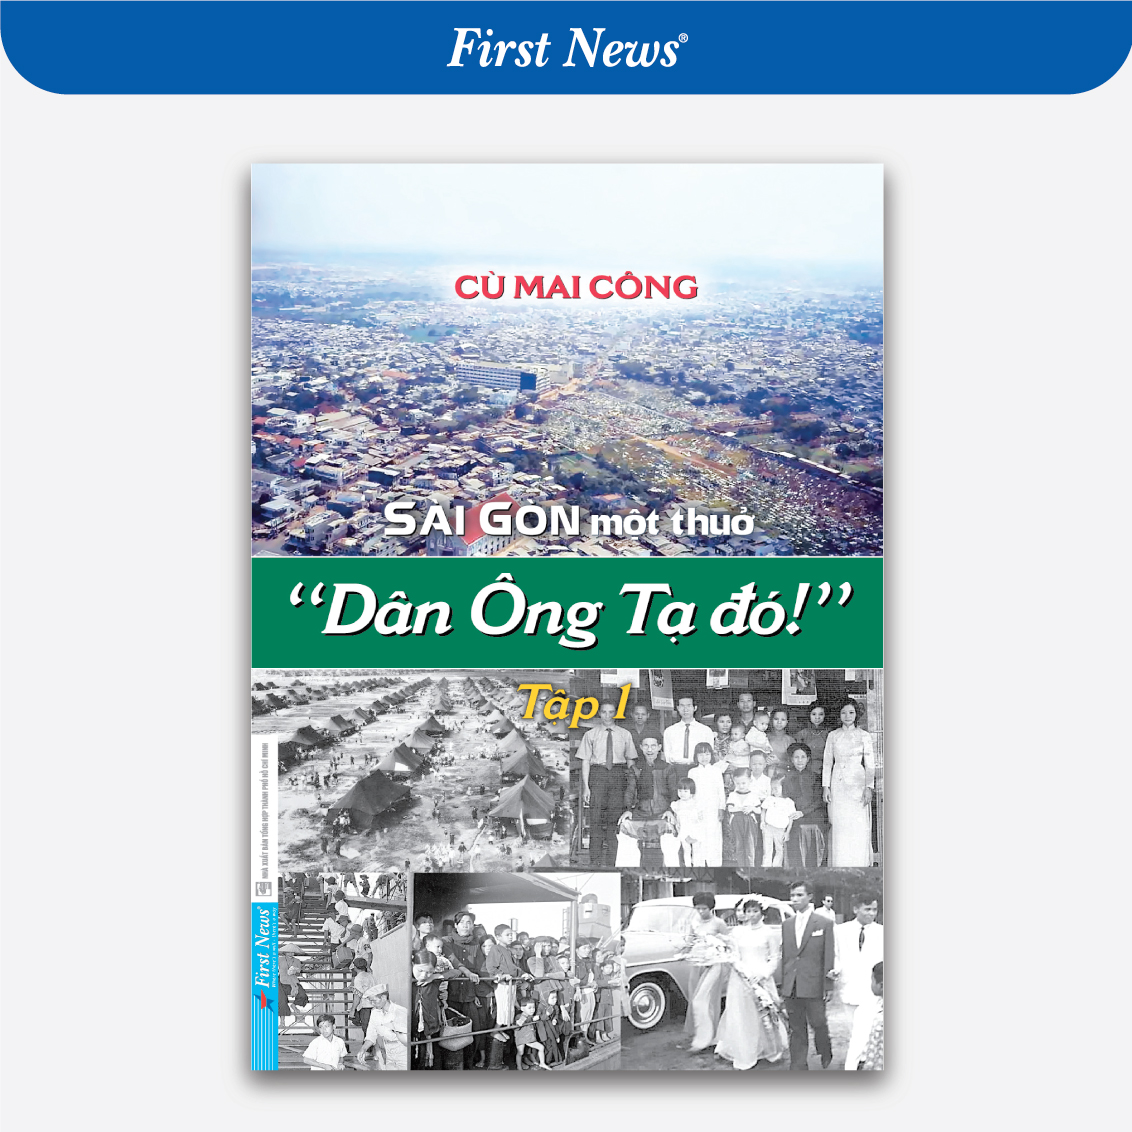 Hình ảnh Sài Gòn một thuở "Dân Ông Tạ đó!" - Tập 1